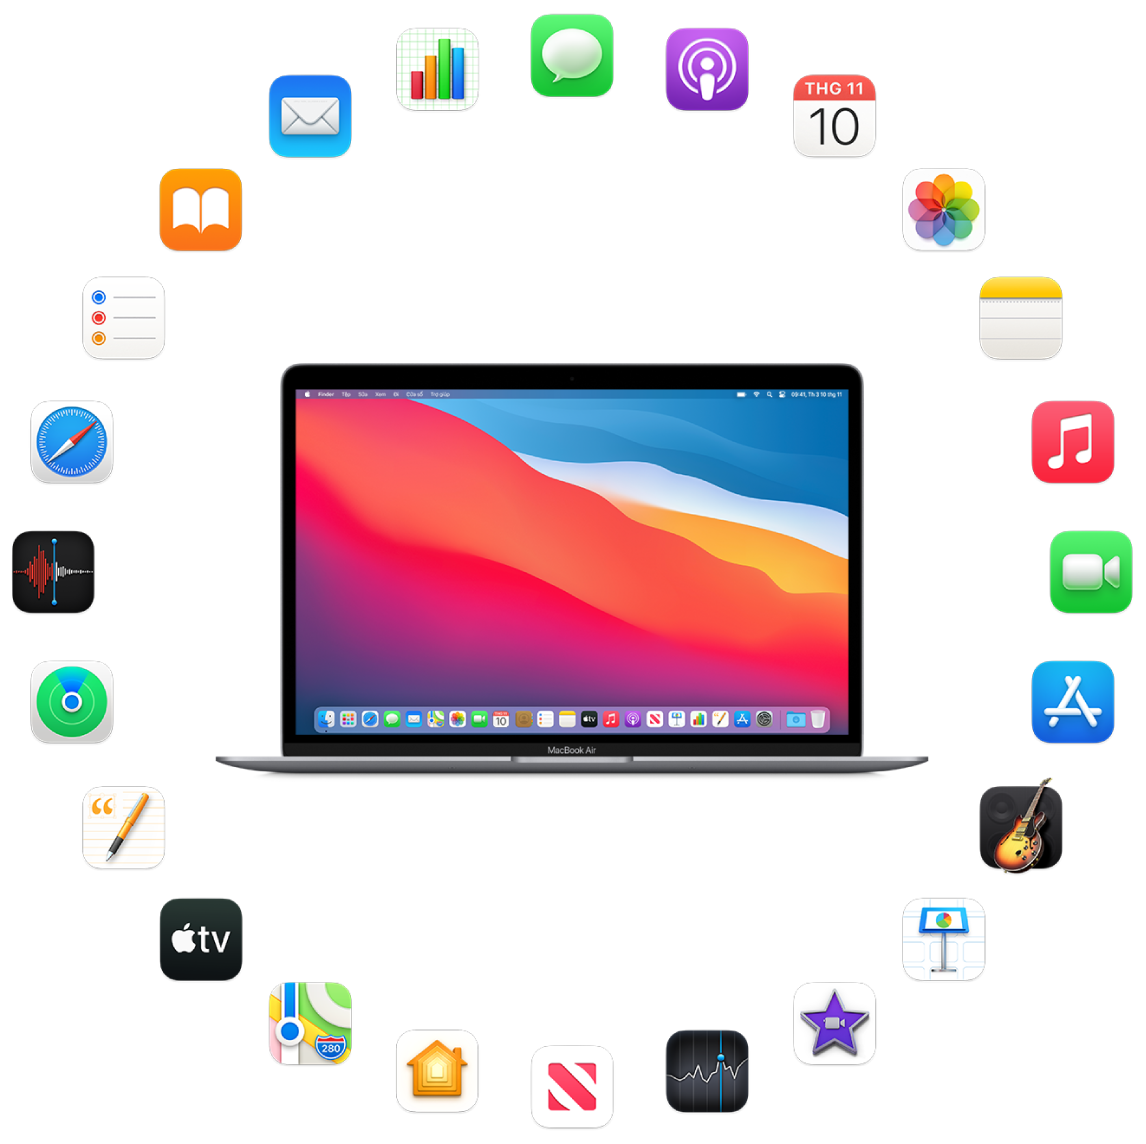 MacBook Air được bao quanh bởi biểu tượng cho các ứng dụng tích hợp được mô tả trong các phần sau.